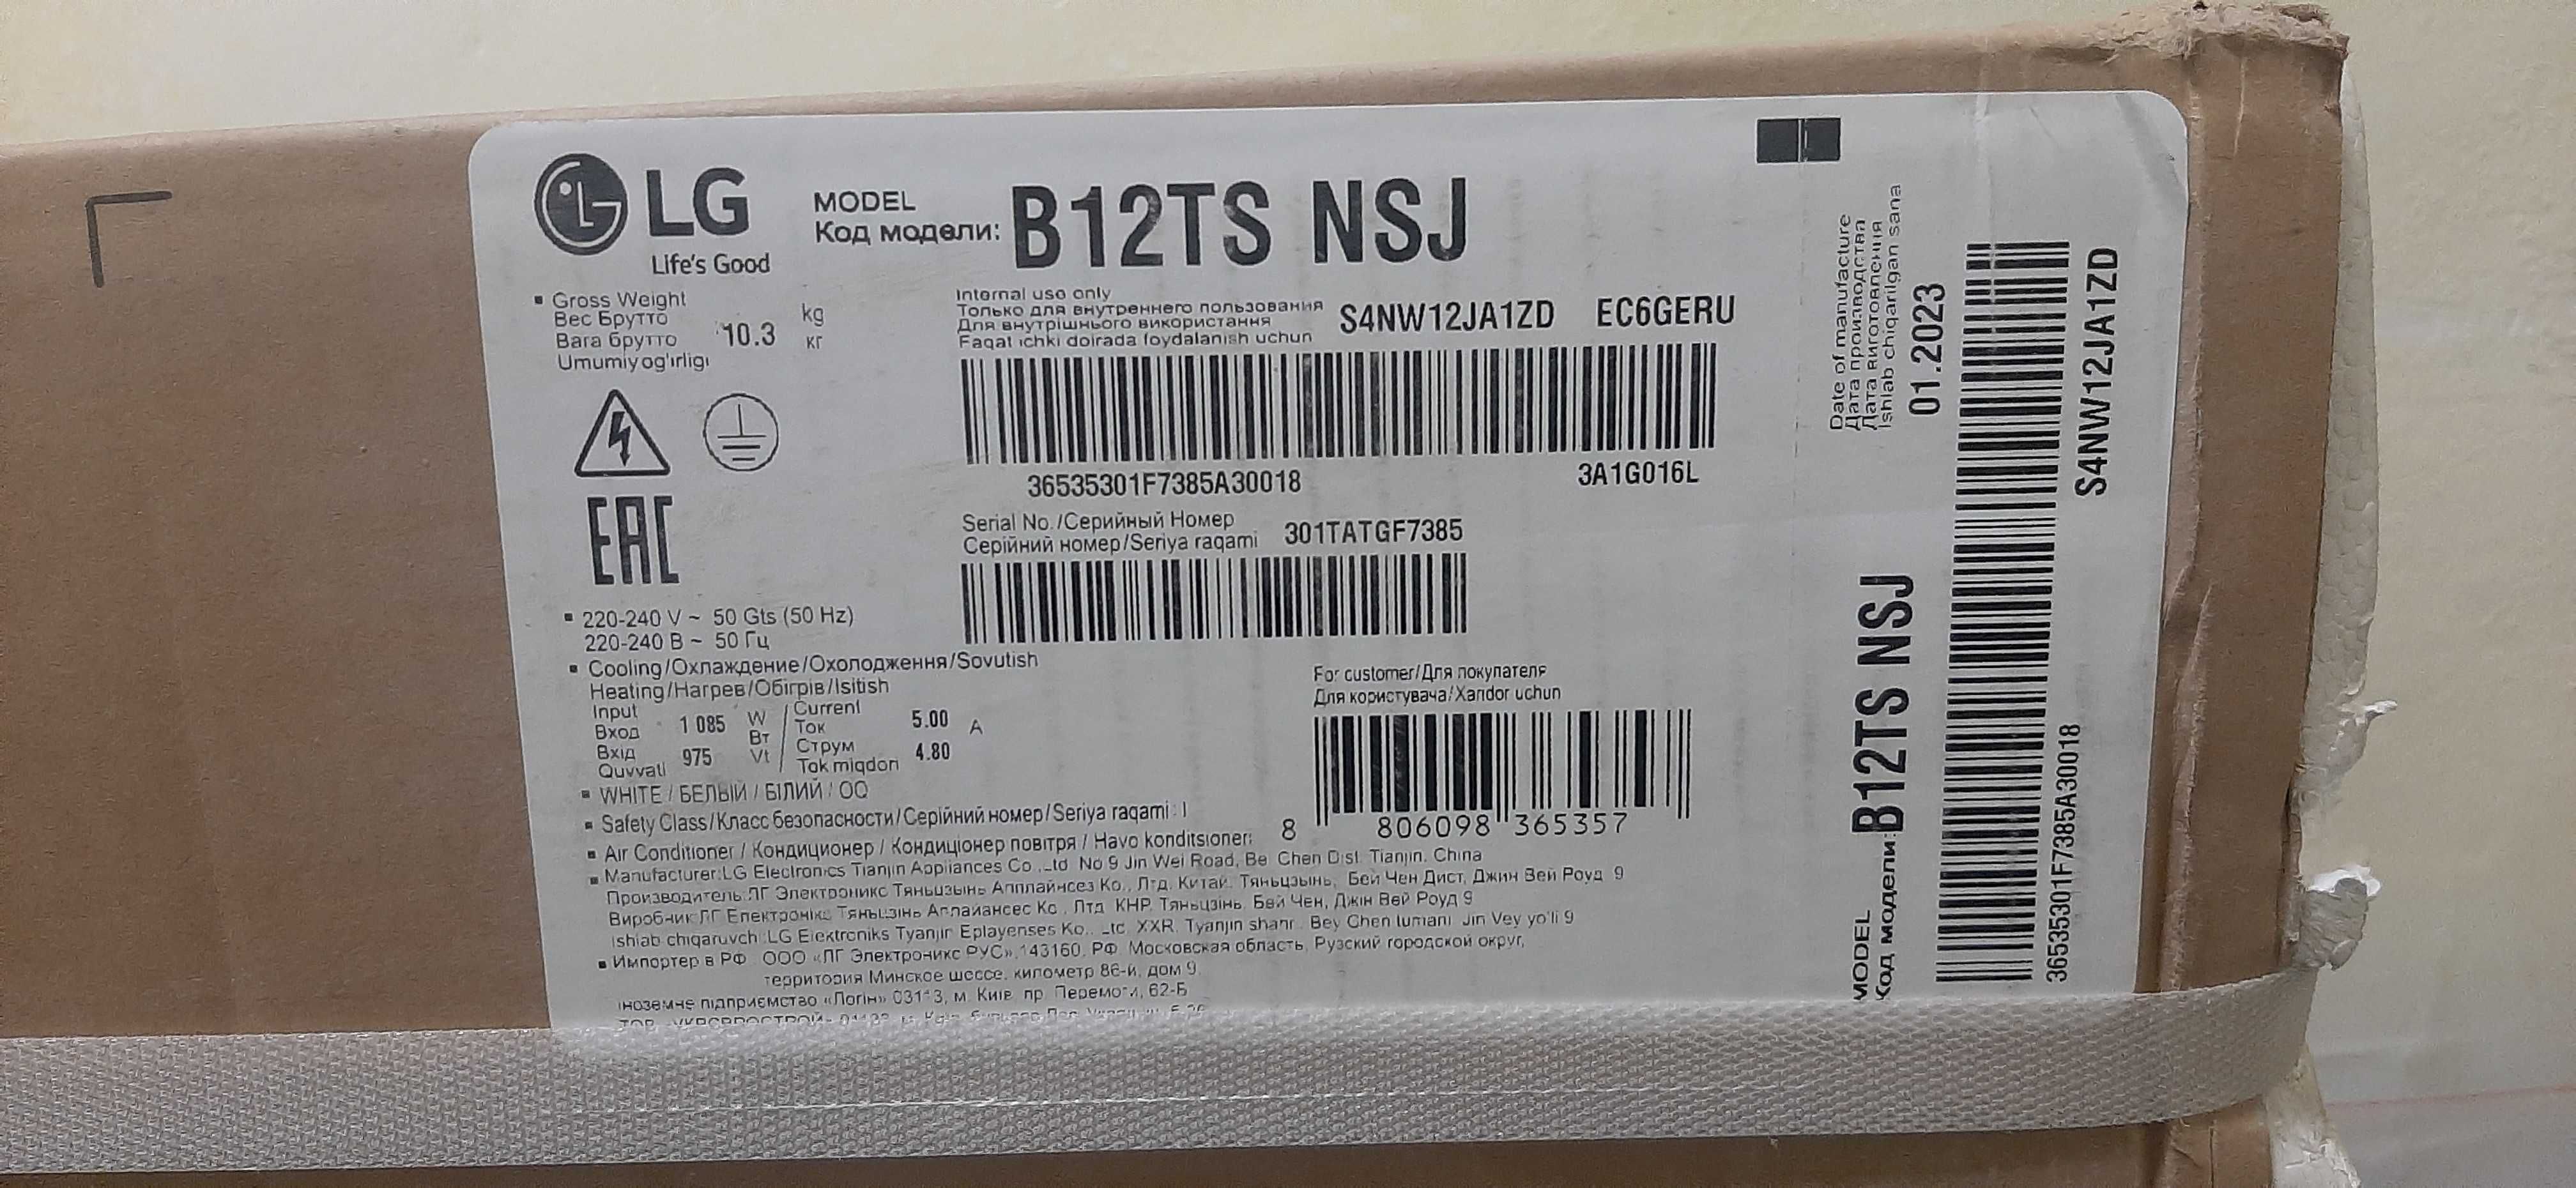 Продаётся кондиционер LG B12TS новий комплект. 630$